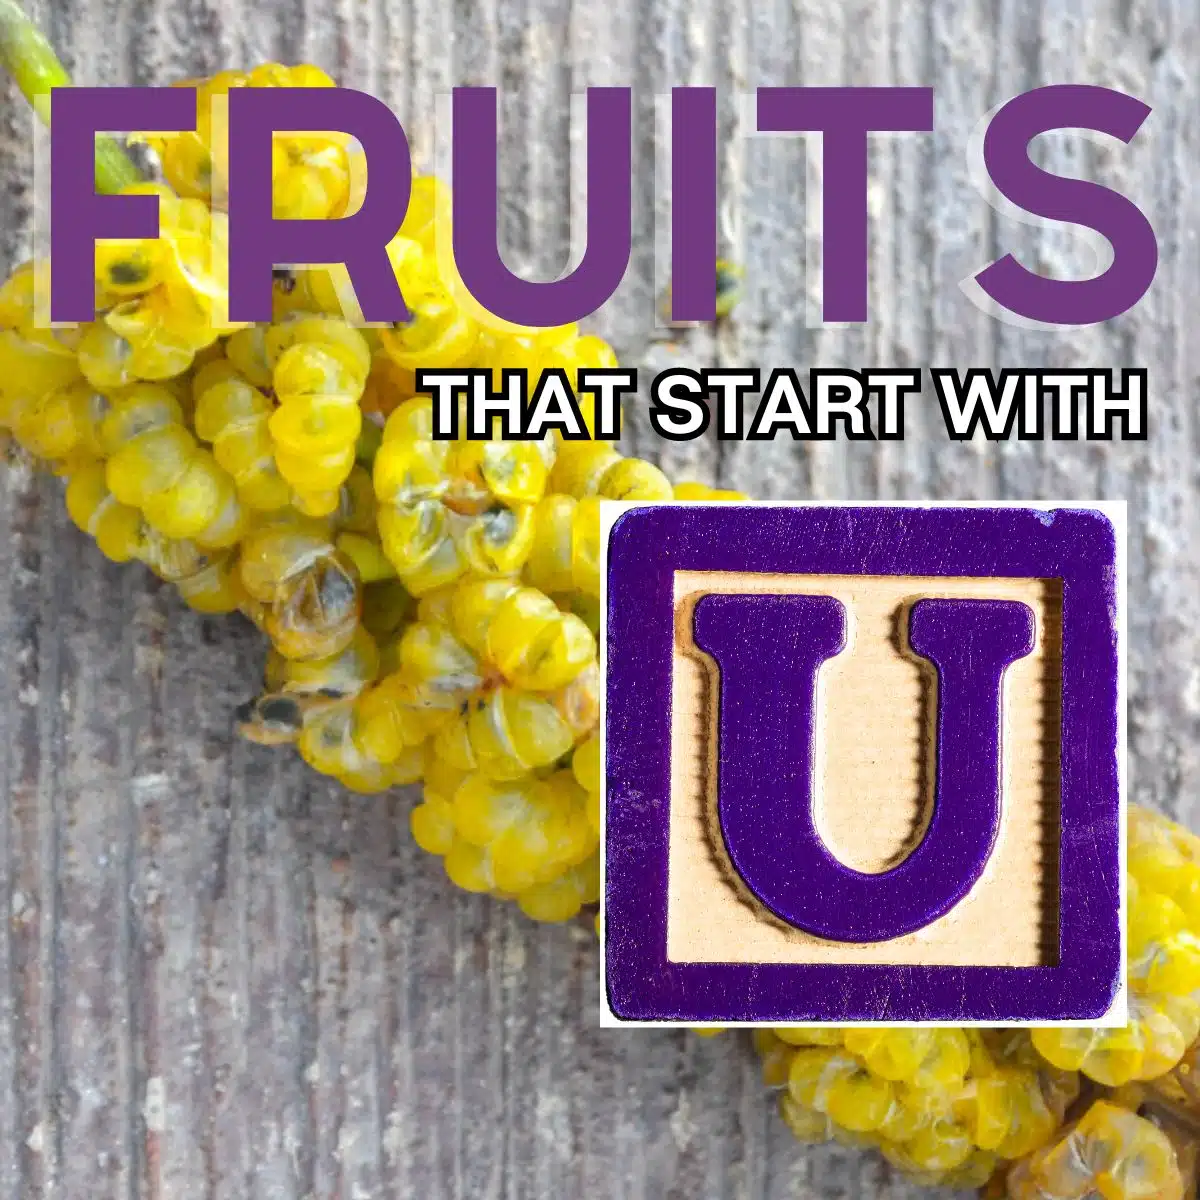 Firkantet billede for frugter, der starter med bogstavet U, med Umbra-frugt.